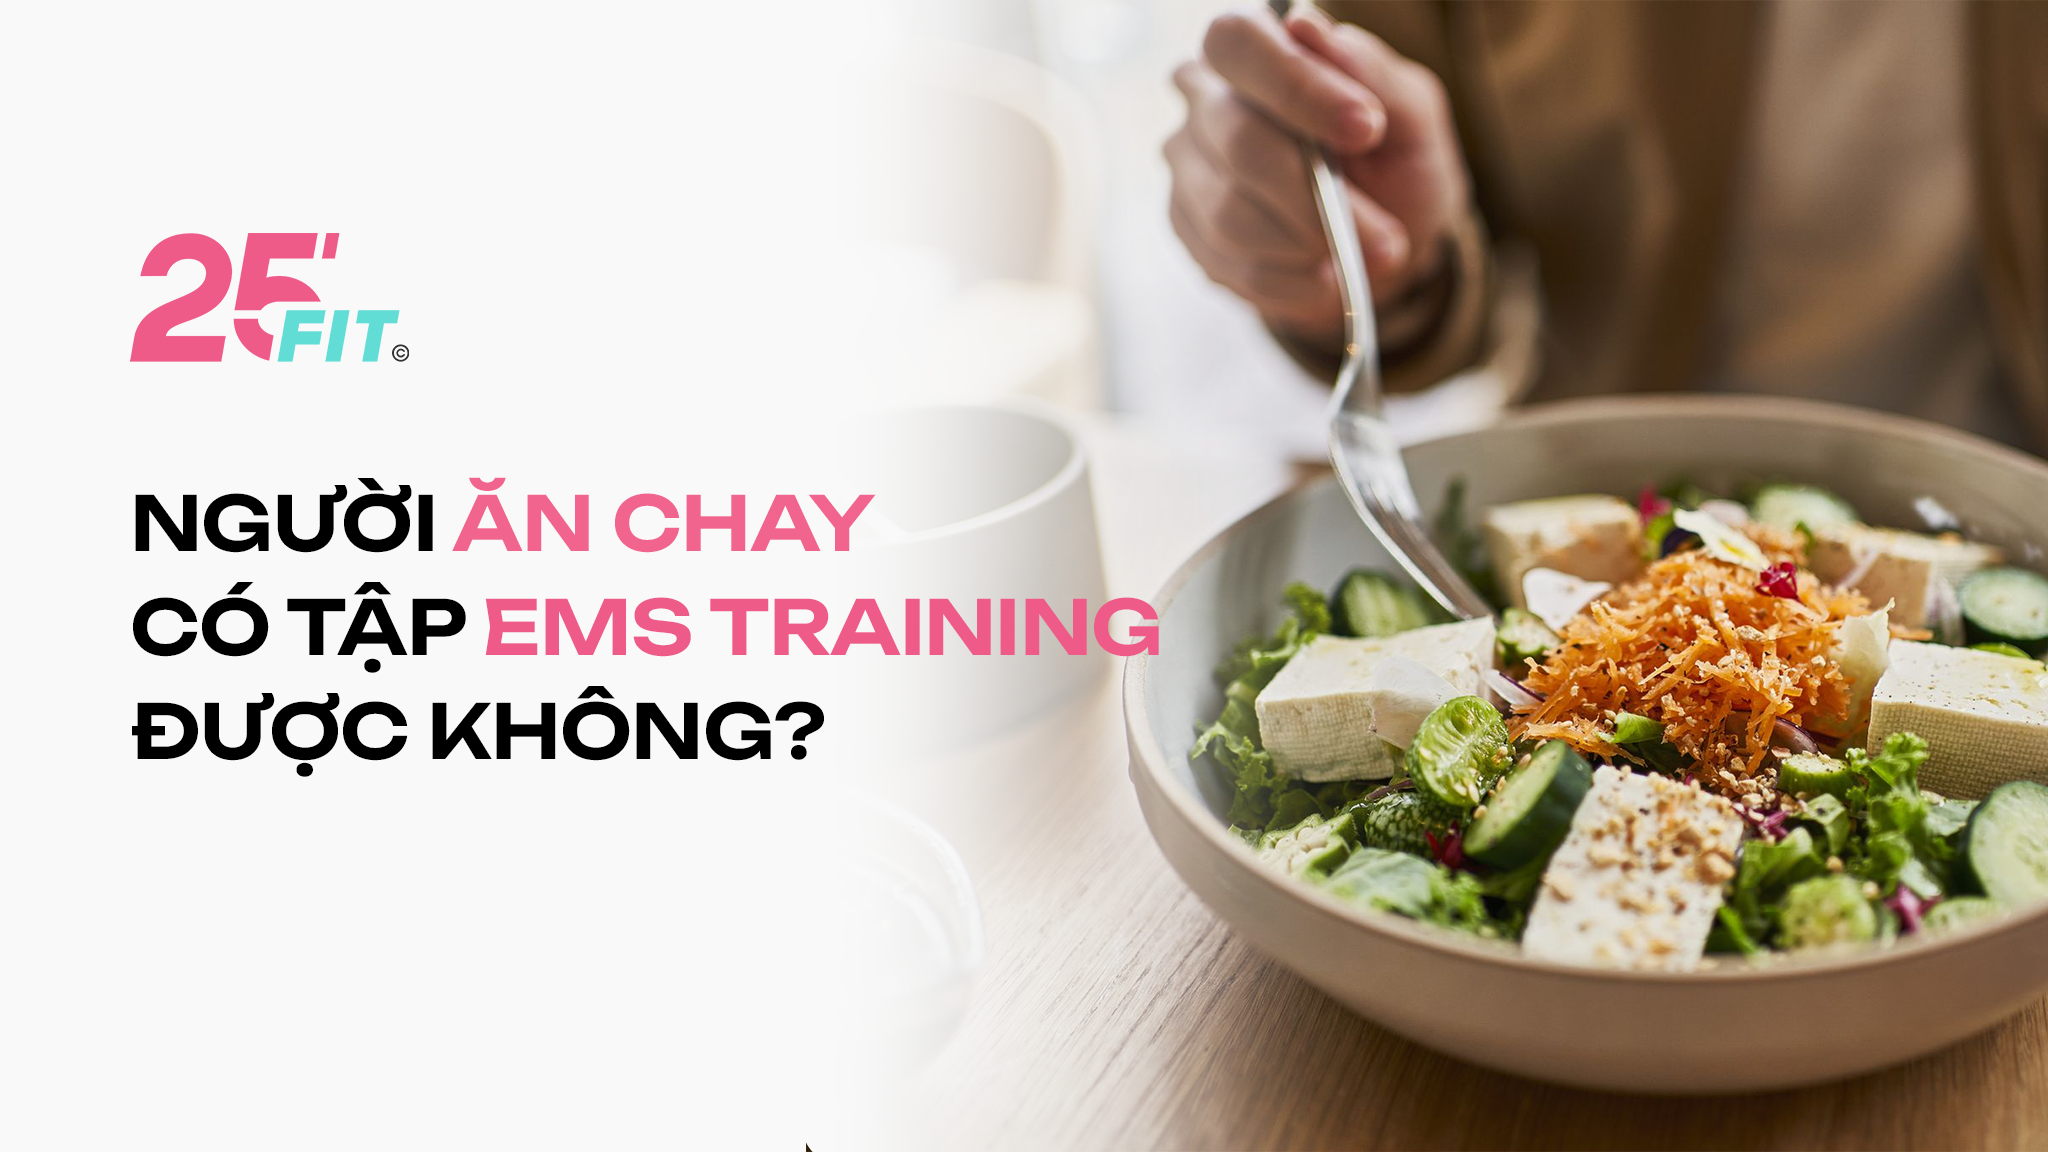 Người ăn chay có tập EMS Training được không?